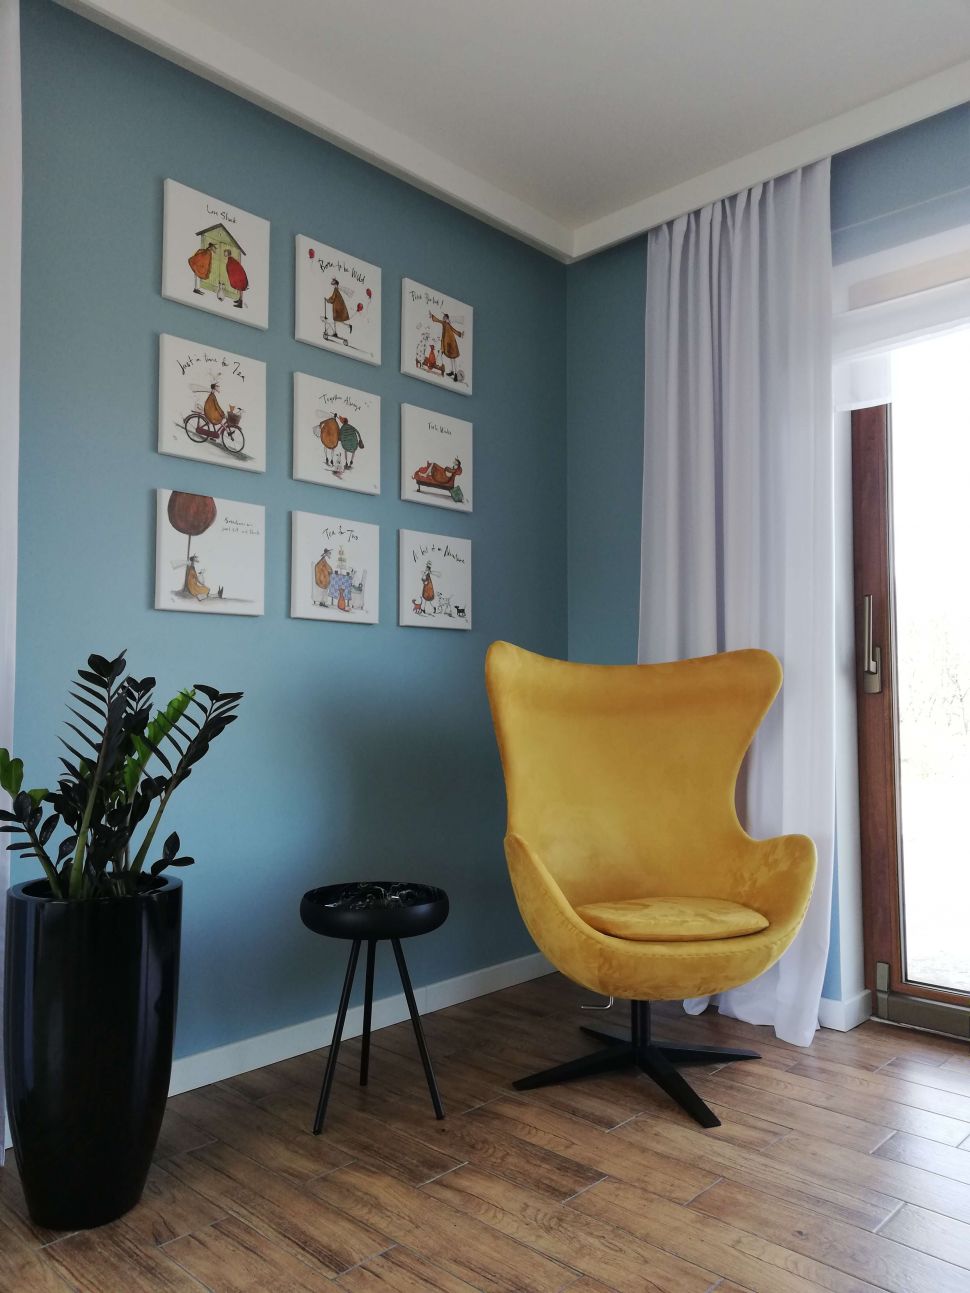 Canvas Just in Time for Tea autorstwa Sam Toft powieszony w salonie nad żółtym fotelem